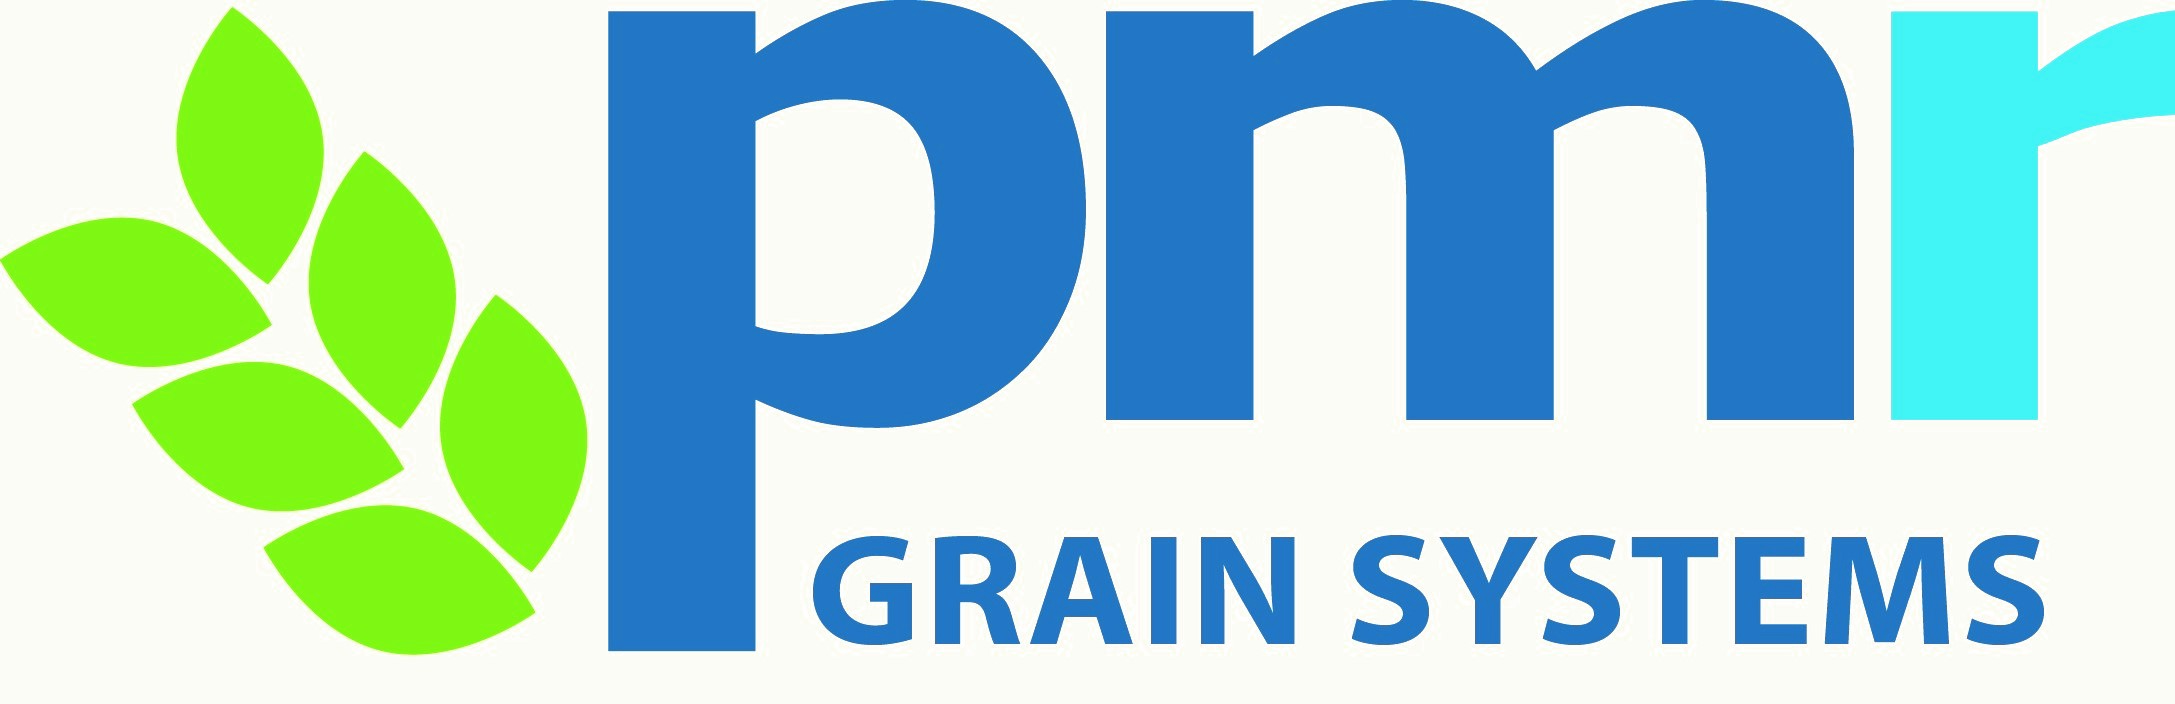 PMR Grain Systems Ltd